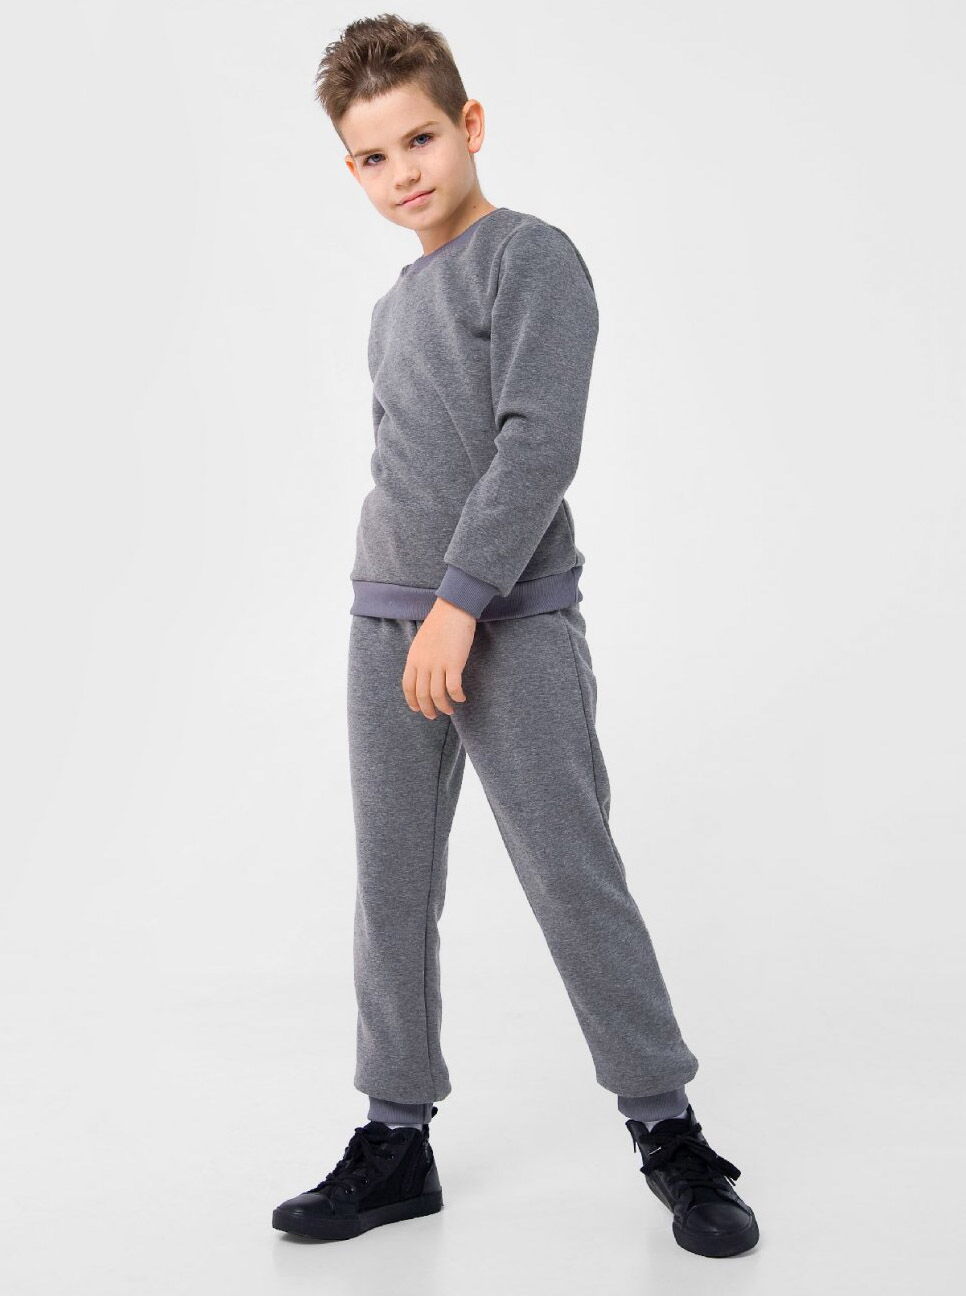 Утепленные штаны для мальчика Smil серые 115446/115447 - цена